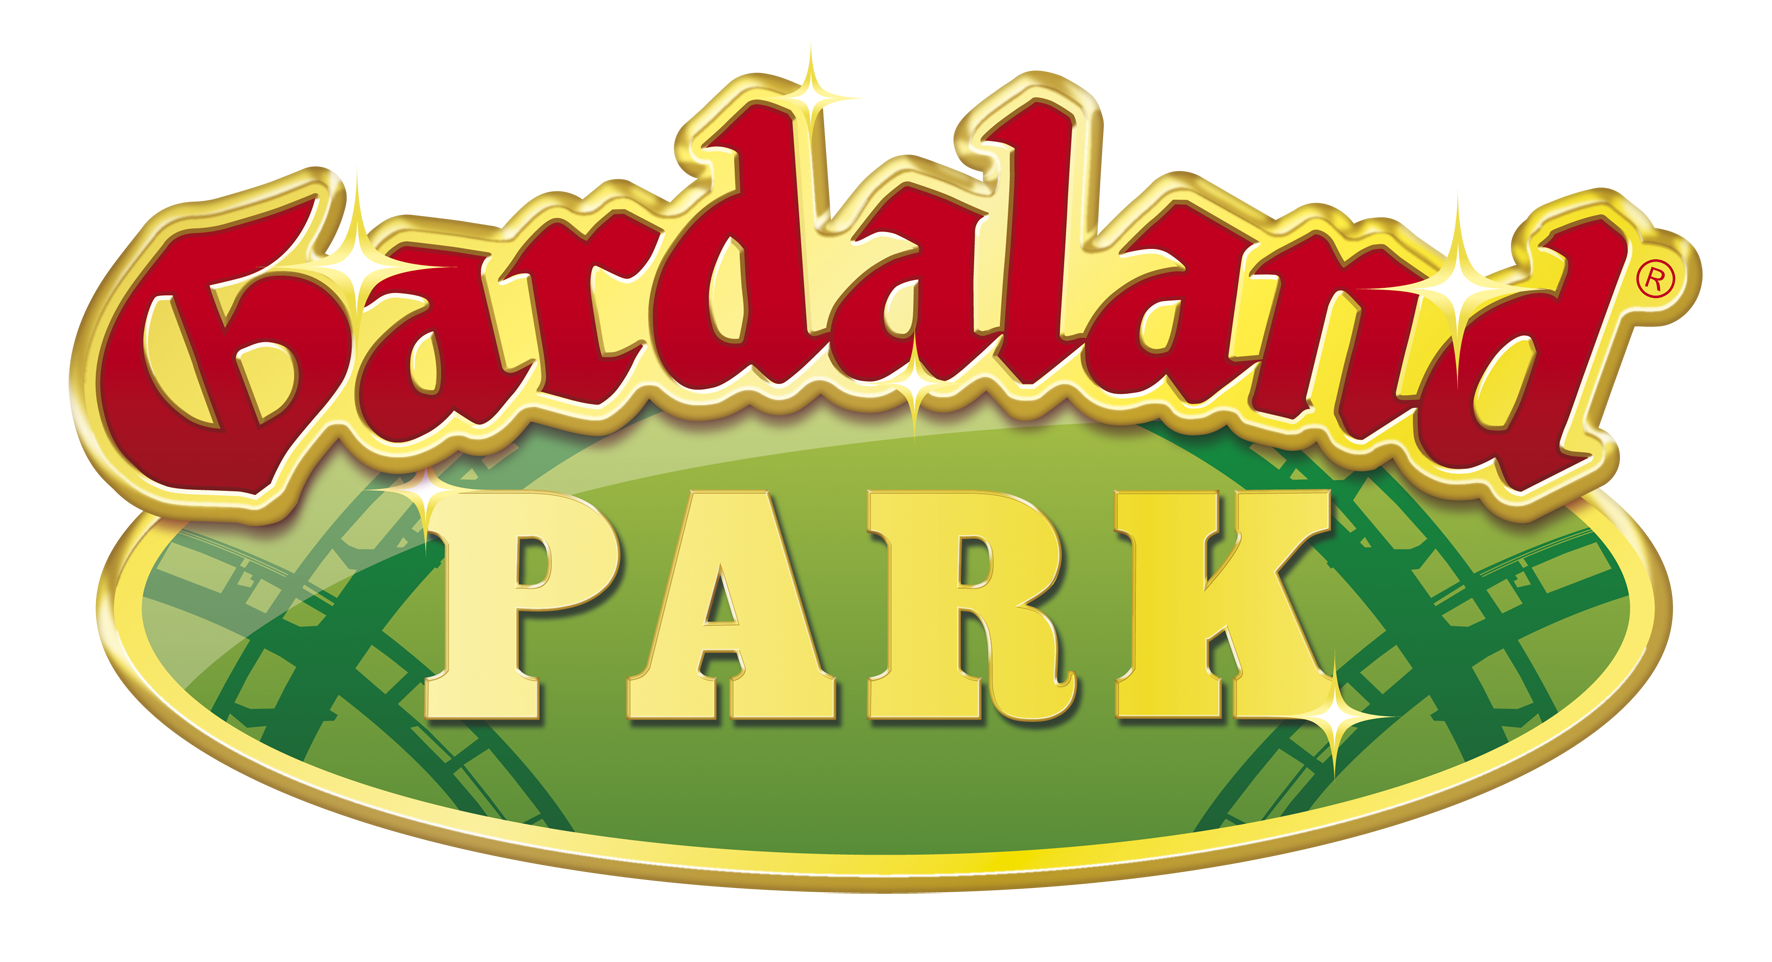 Gardaland zábavní park